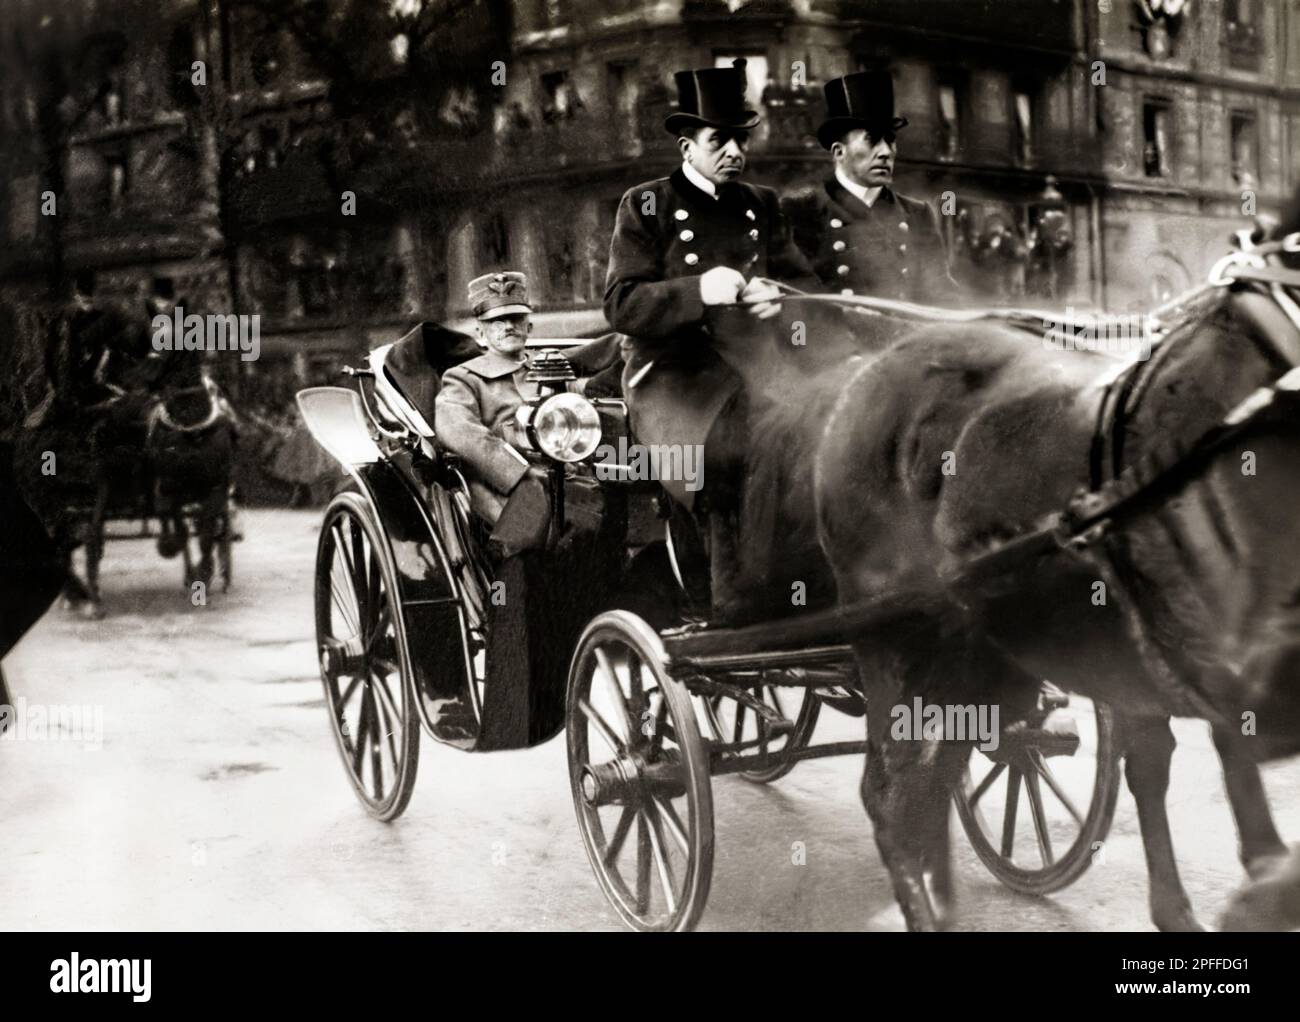 Le roi d'Italie Victor-Emmanuel III (Vittorio Emanuele III) en décembre 1918, quand il est venu à Paris. Grande Guerre, première Guerre mondiale, 1914-1918 Banque D'Images